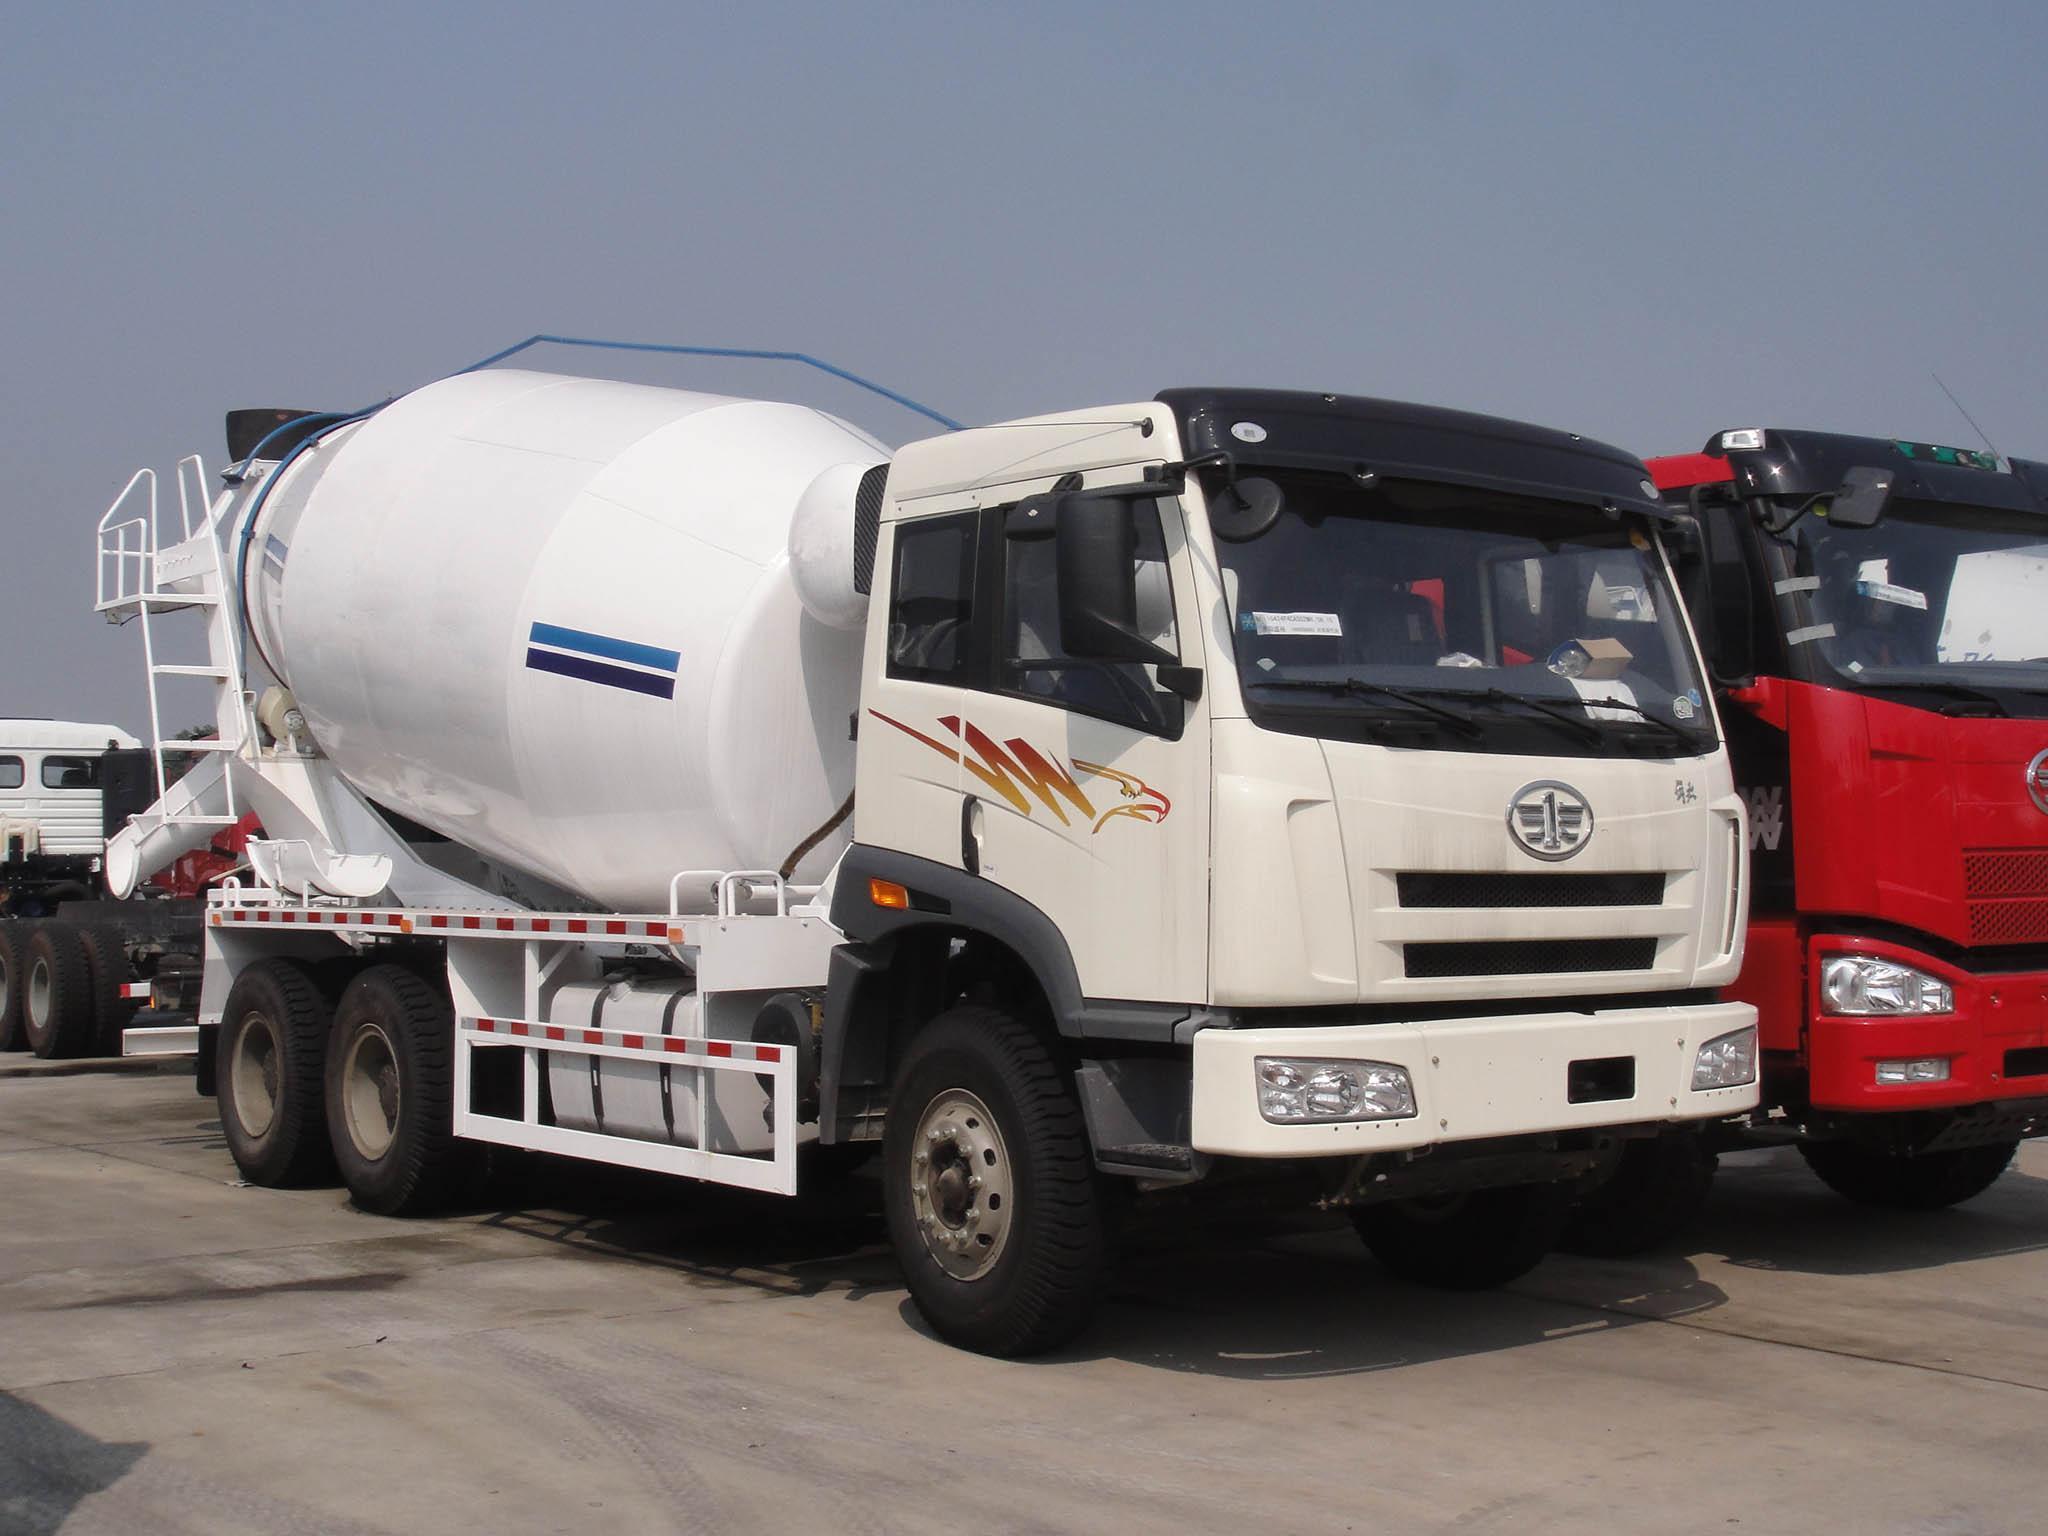 HM14-D cement mixer truck